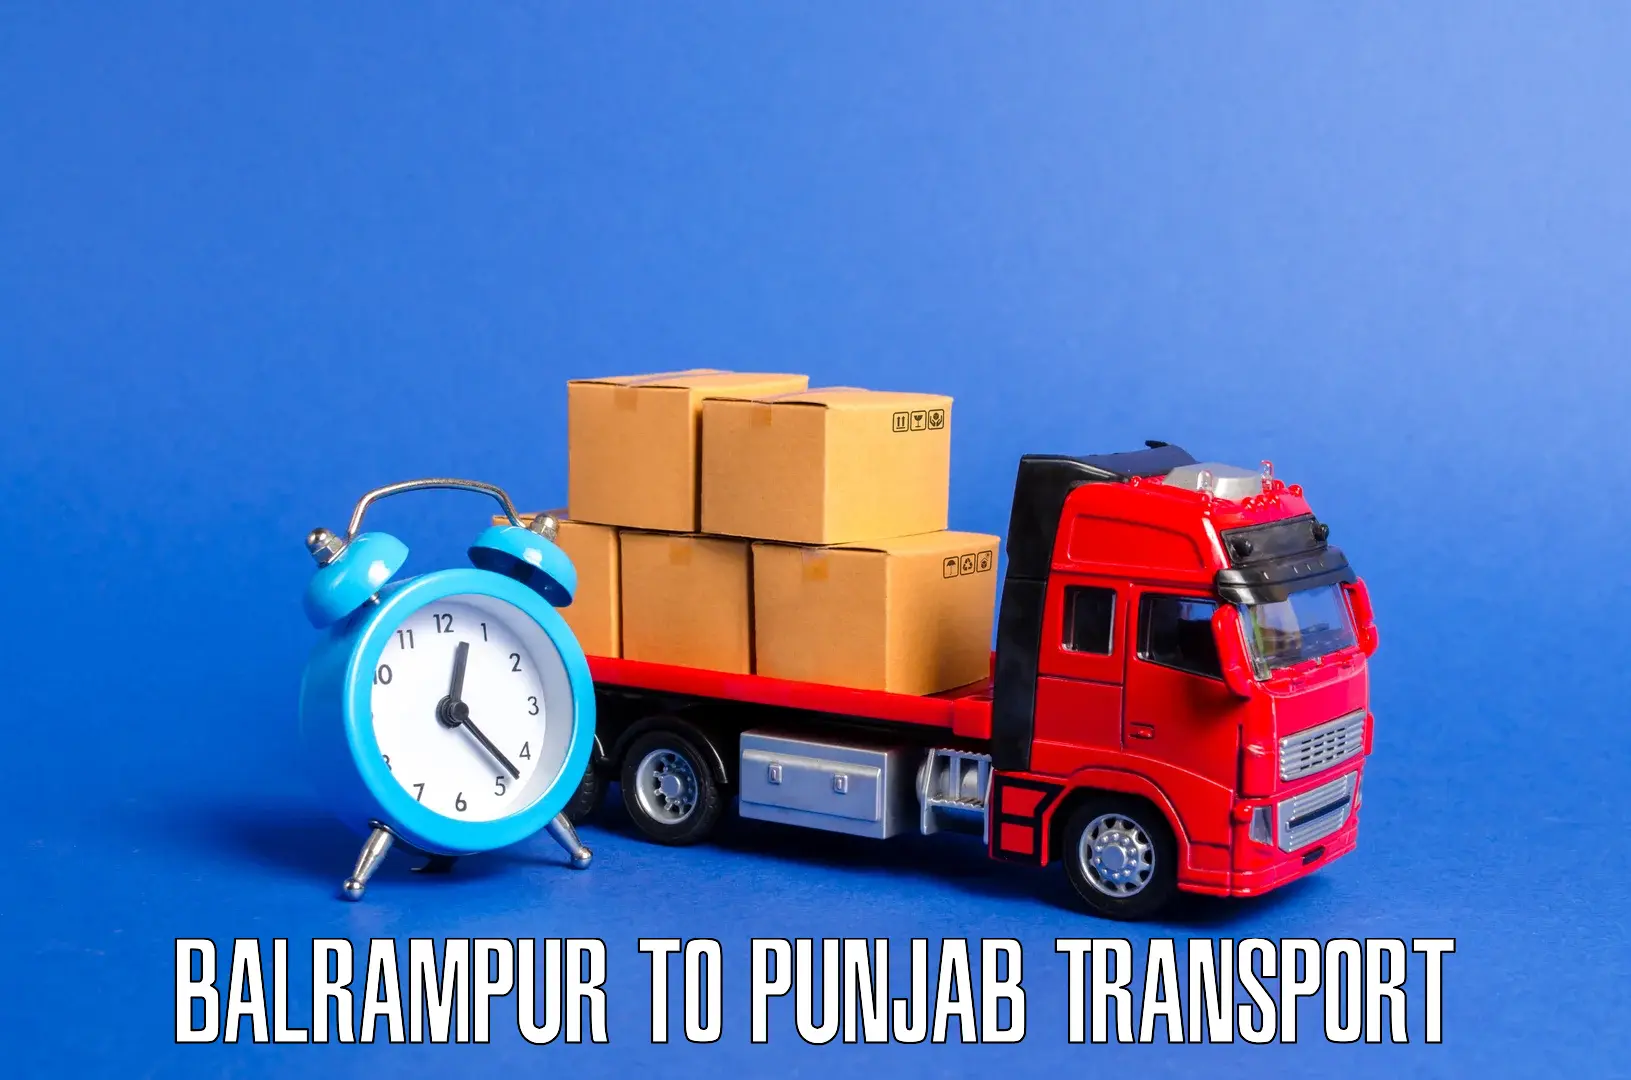 Transport in sharing Balrampur to Punjab